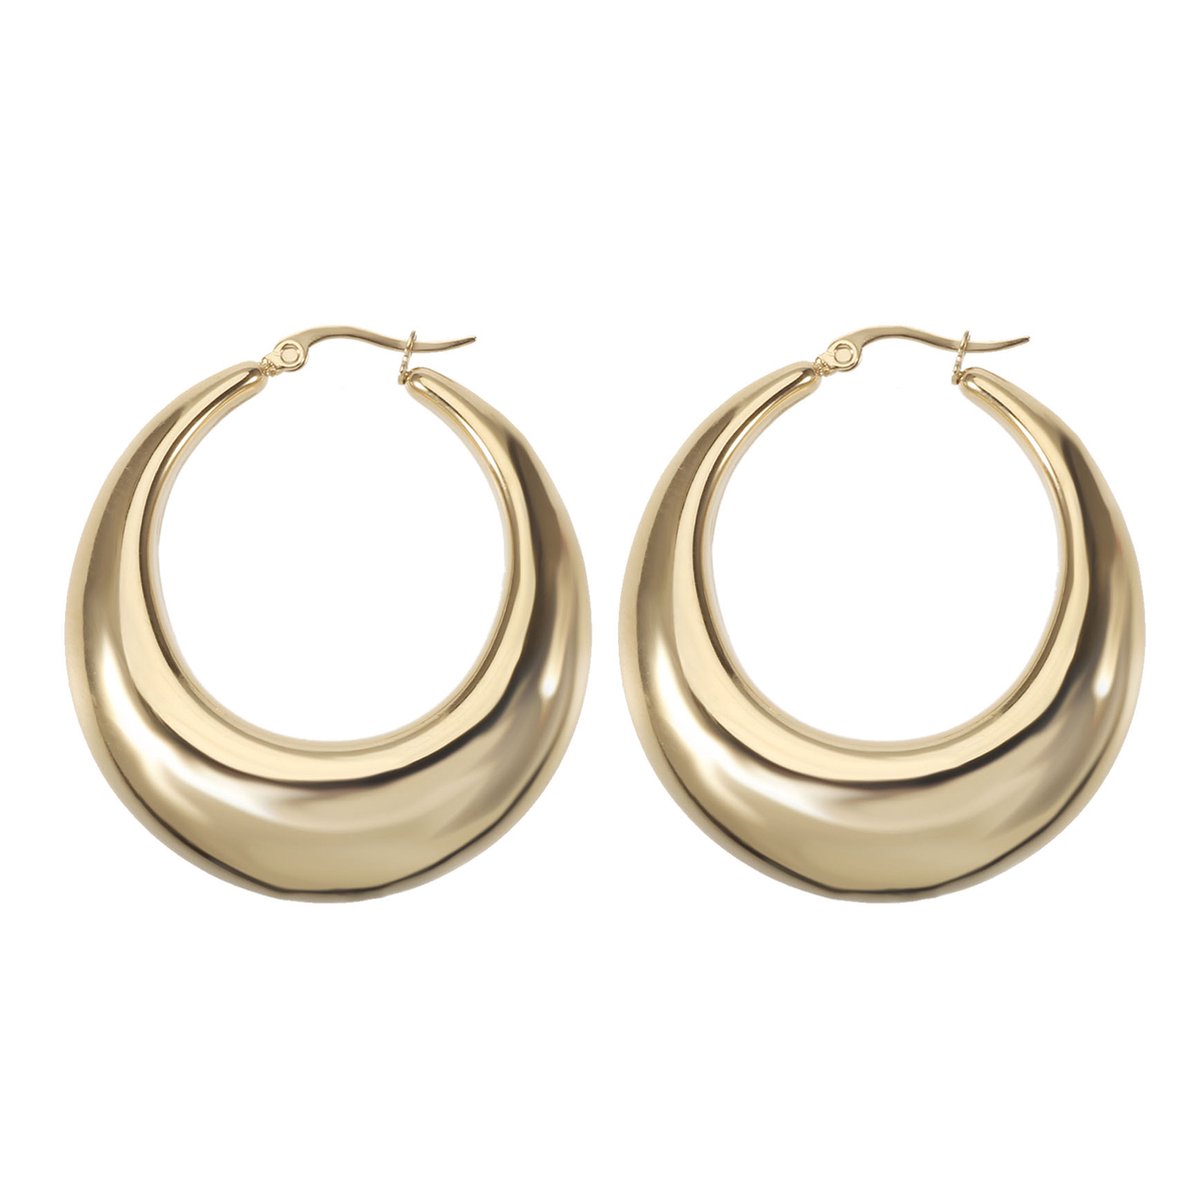 The Jewellery Club - Amber earrings gold - Oorbellen - Dames oorbellen - Oorringen - Stainless steel - Goud - 4 cm